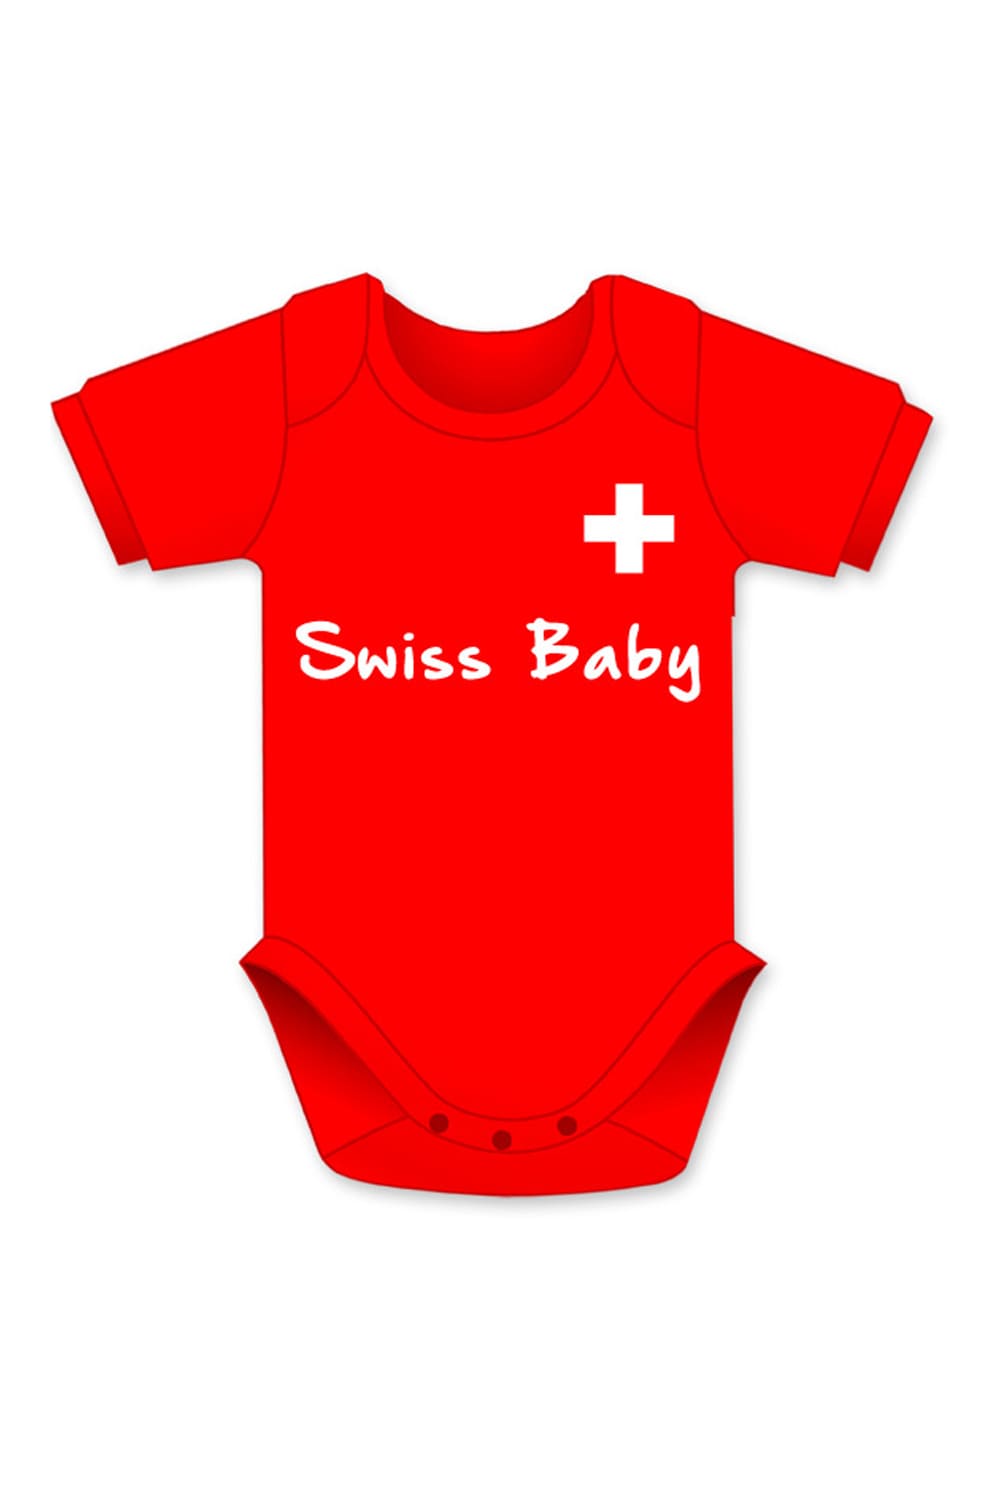 Swiss Baby der Baby Body in der farbe rot mit schweizer Flagge